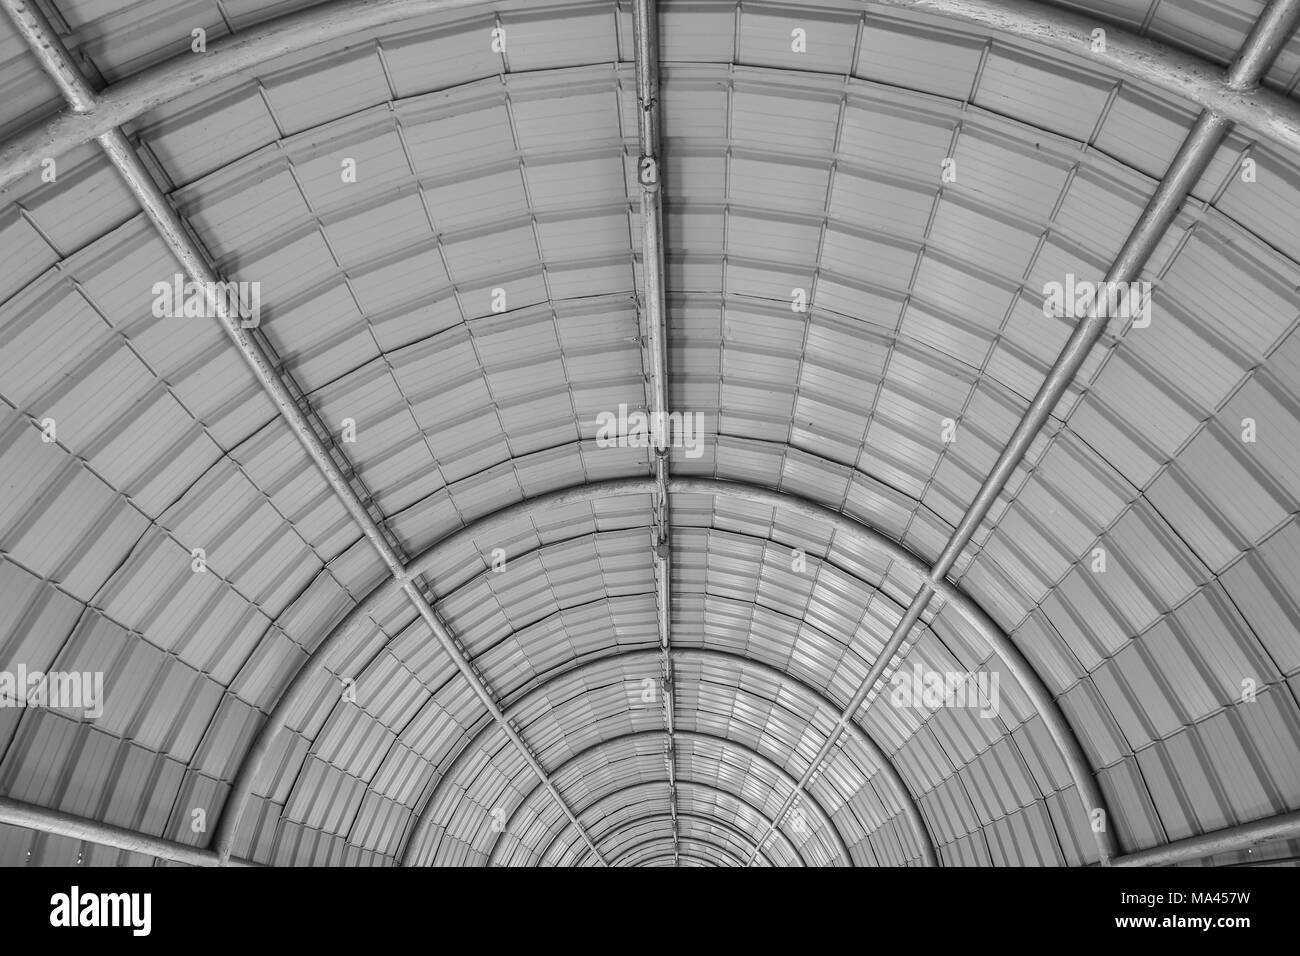 Configurazione astratta del semicerchio in bianco e nero. semicerchio struttura di copertura costituito da tubi di metallo crea bellissimi disegno geometrico e forme Foto Stock